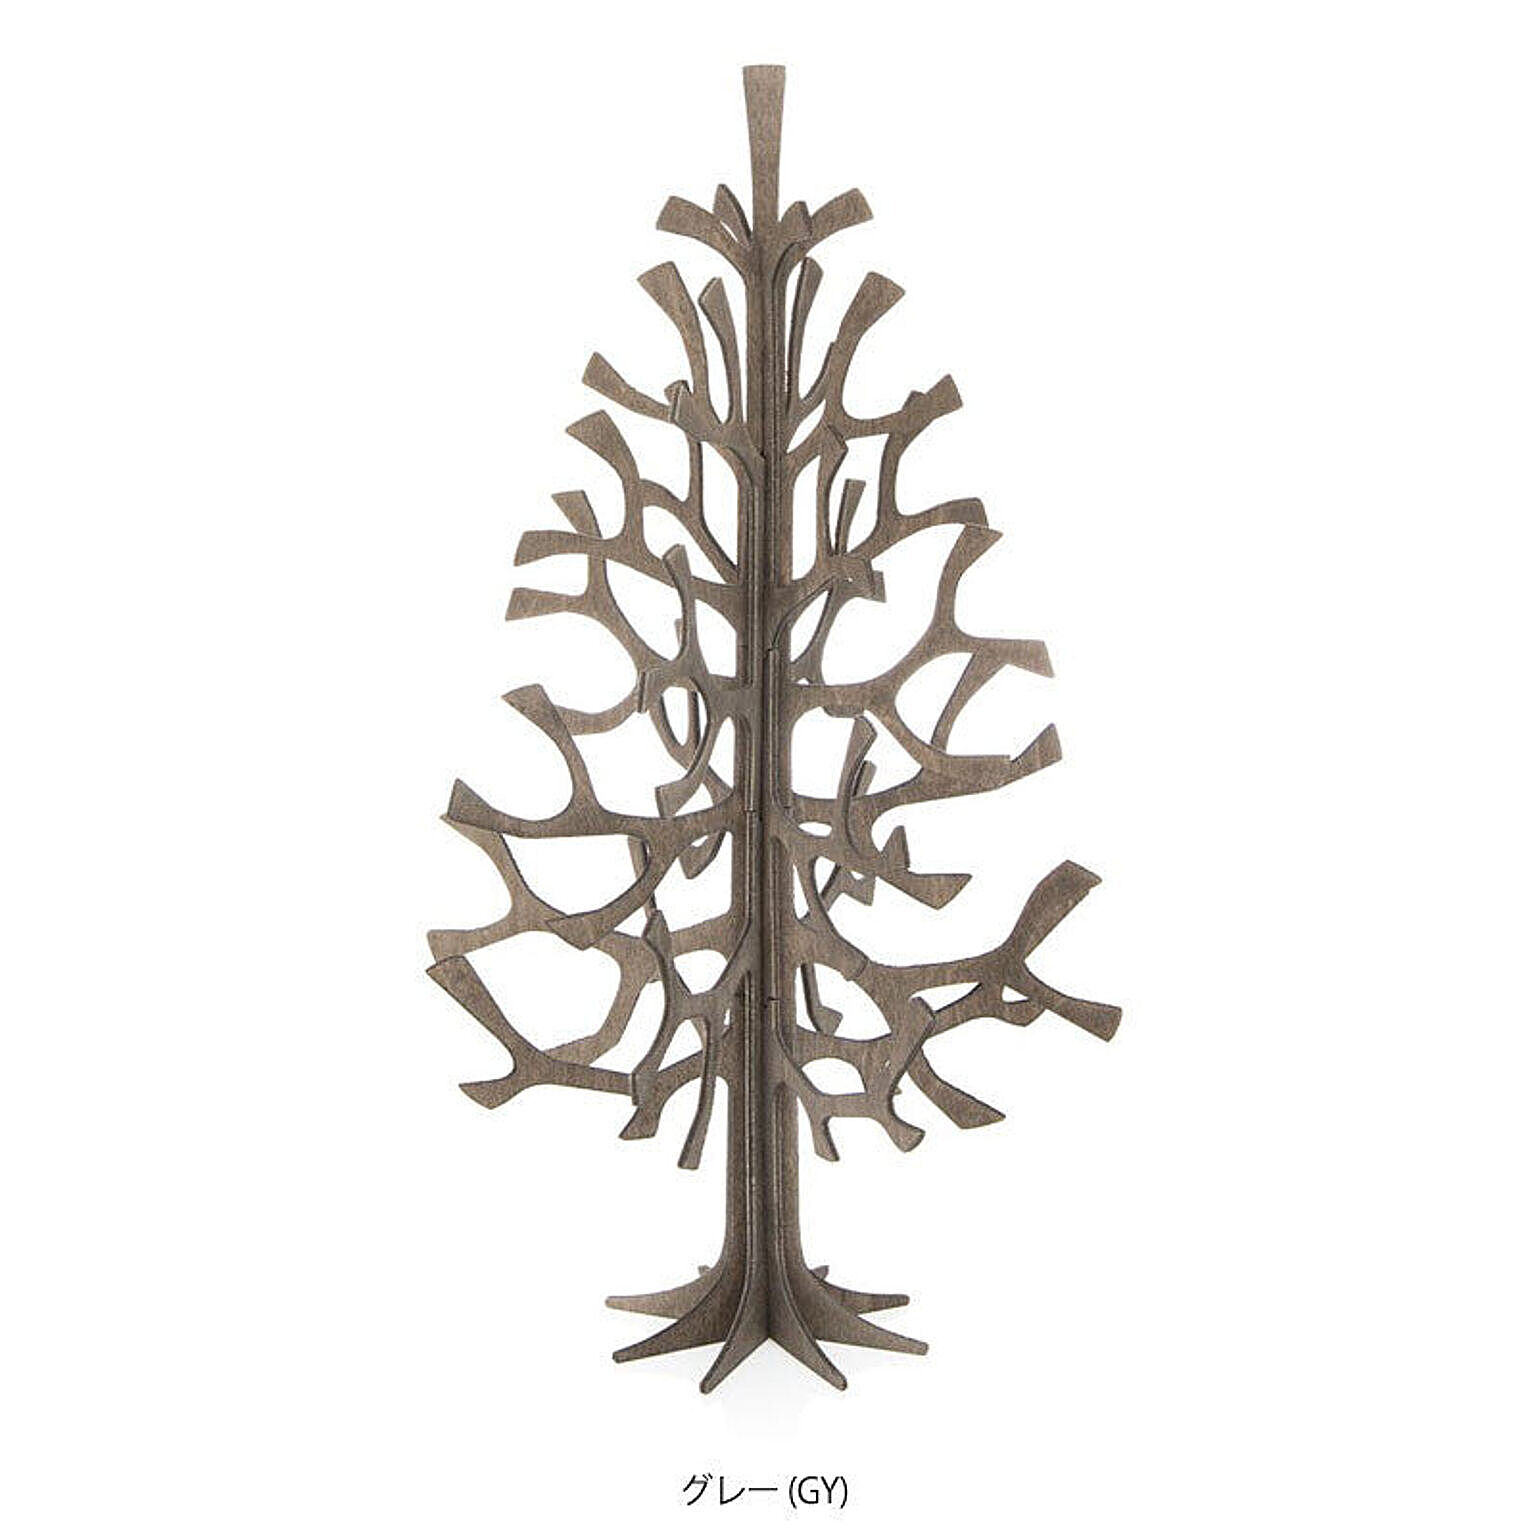 【lovi/ロヴィ】クリスマスツリー mominoki 25cm　